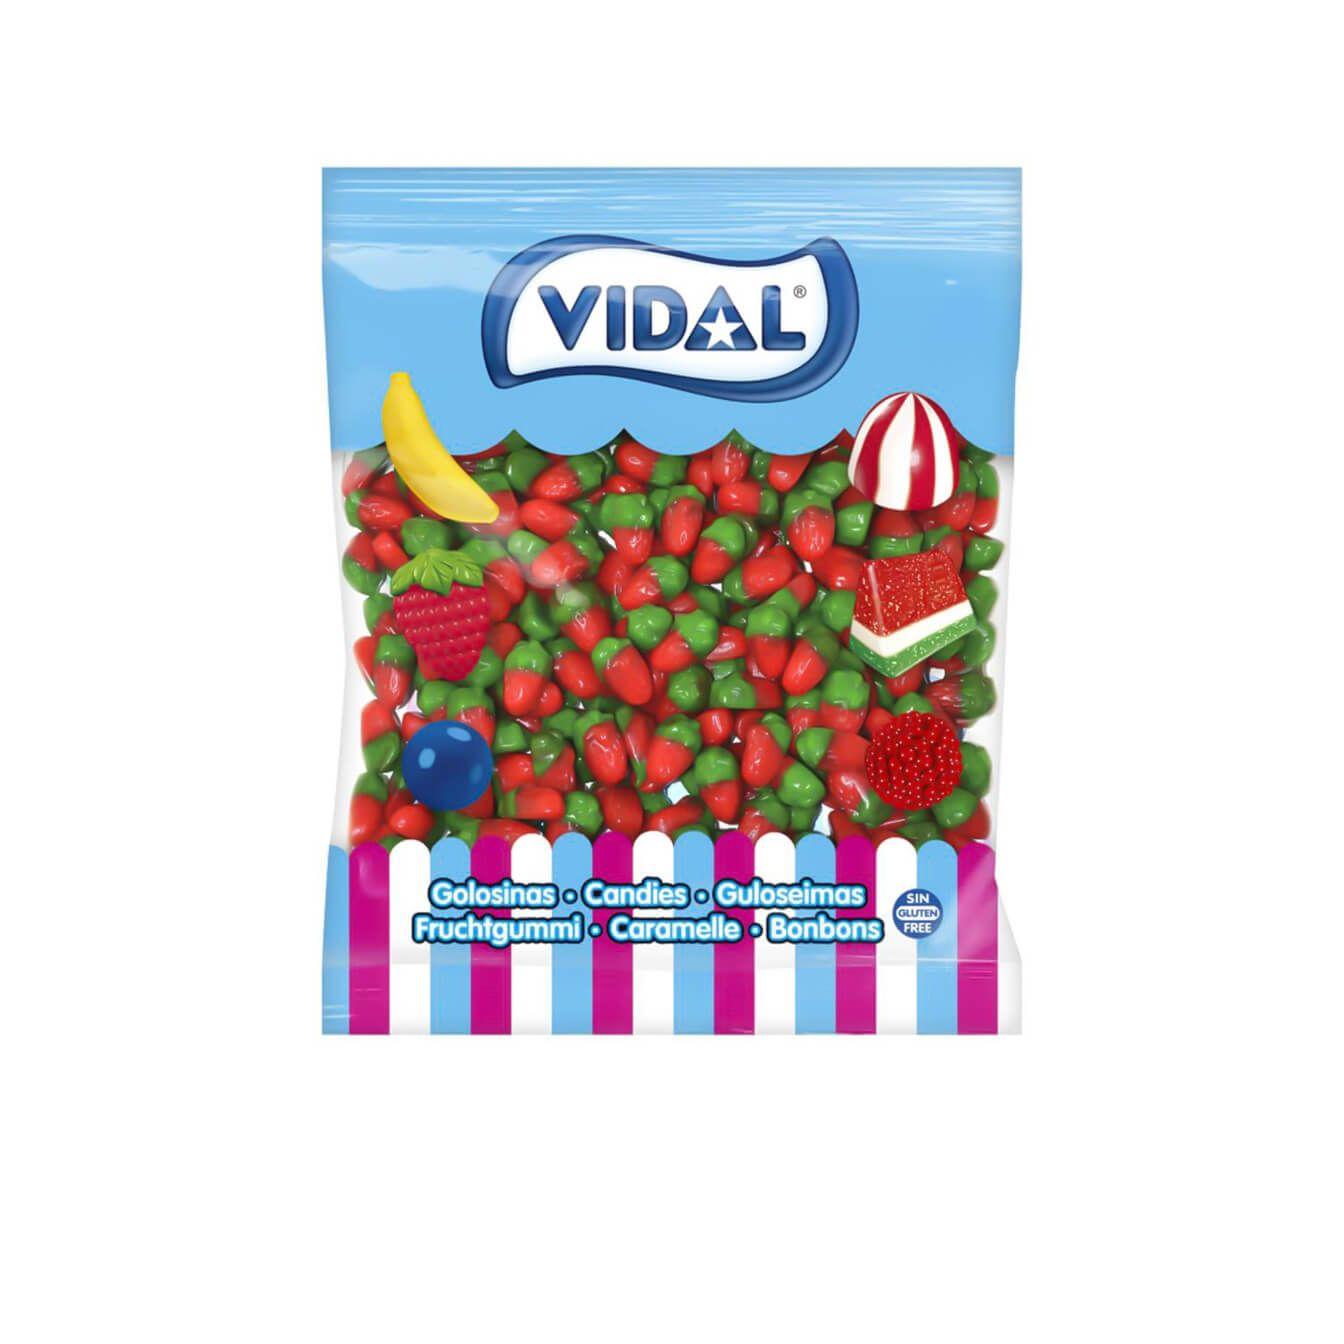 Vidal - Gominolas de Vidal Mini Fresas Silvestres bolsa 1 Kg - Fresas del bosque de golosina, un clásico de los caramelos de goma sabor a fresa con el irresistible toque de Vidal - Tamaño mini - Sin Gluten y sin Grasa